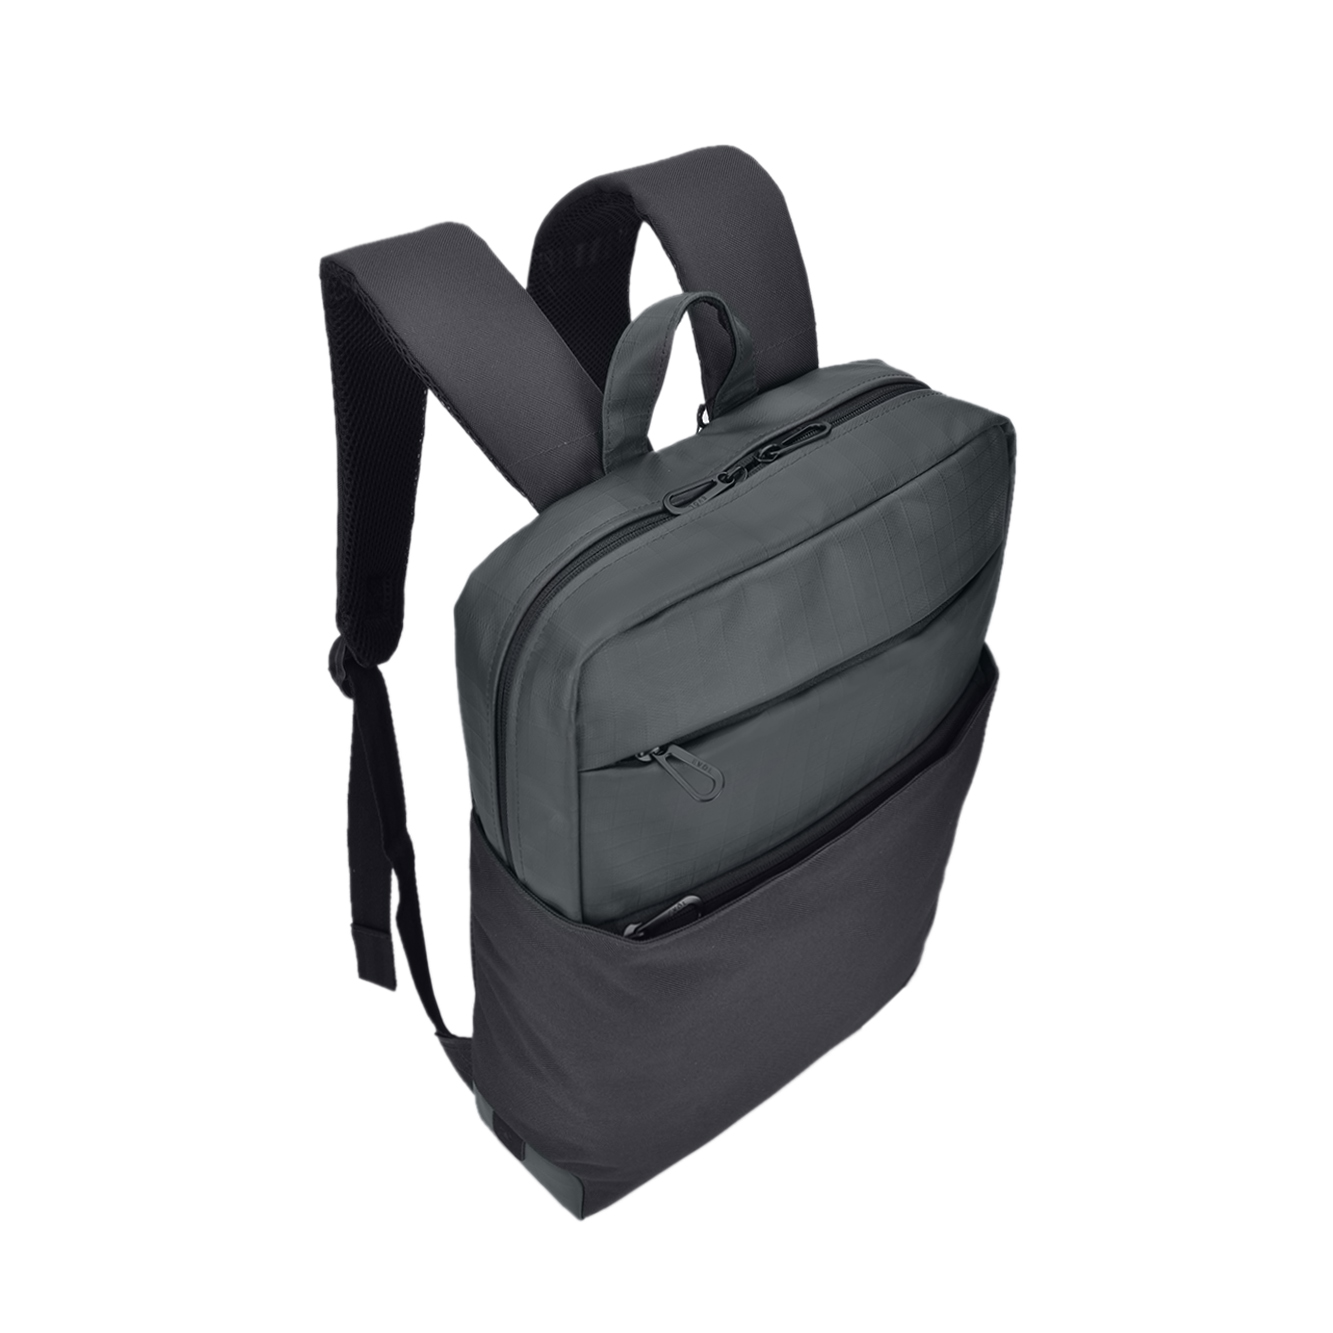 Byron 15.6″ Laptop Backpack Black - Evol